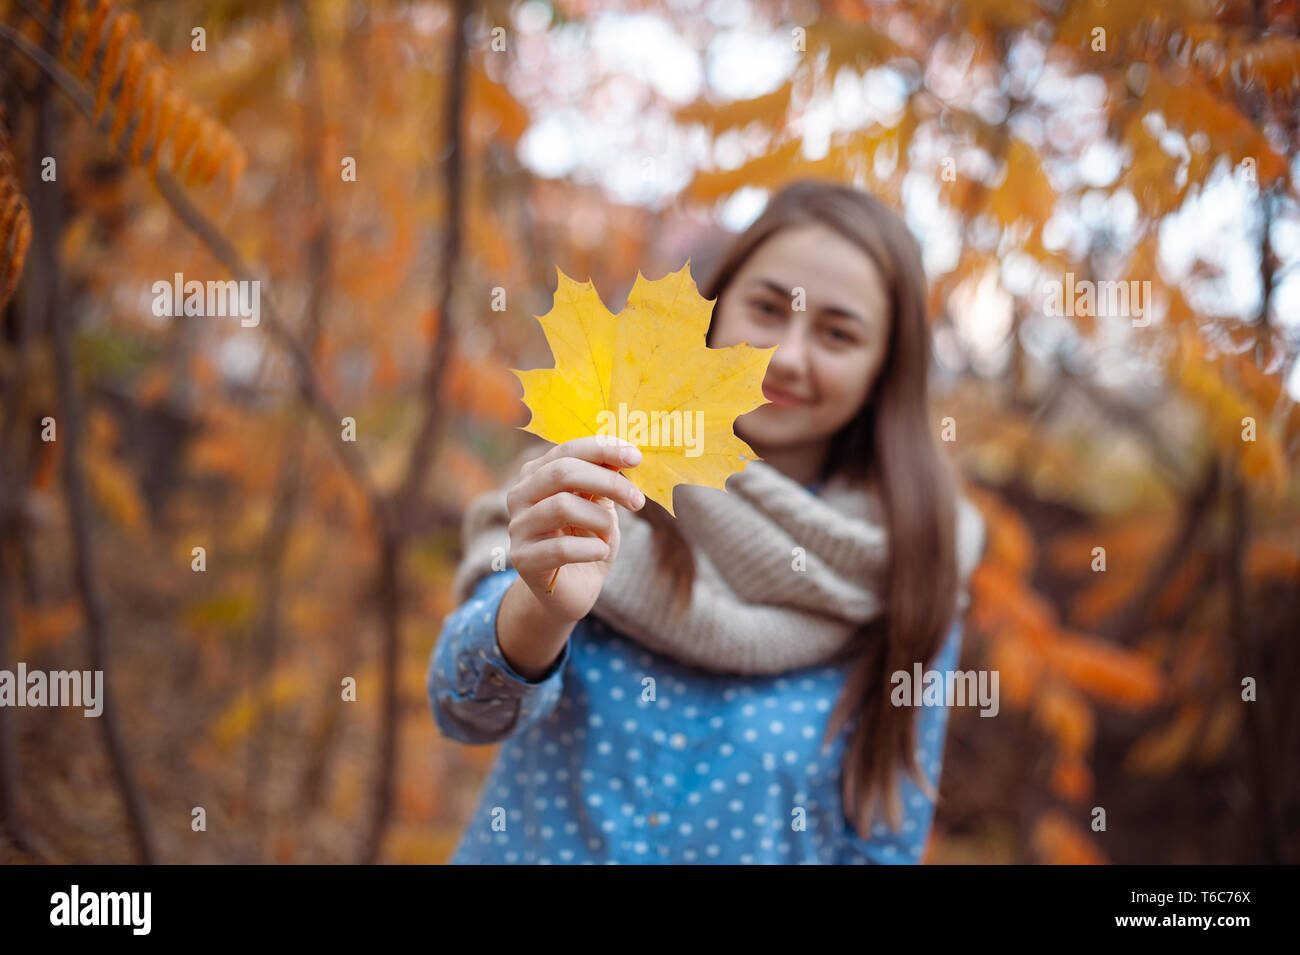 Schöne junge Frau hält eine Reihe von Herbst Blätter Stockfoto